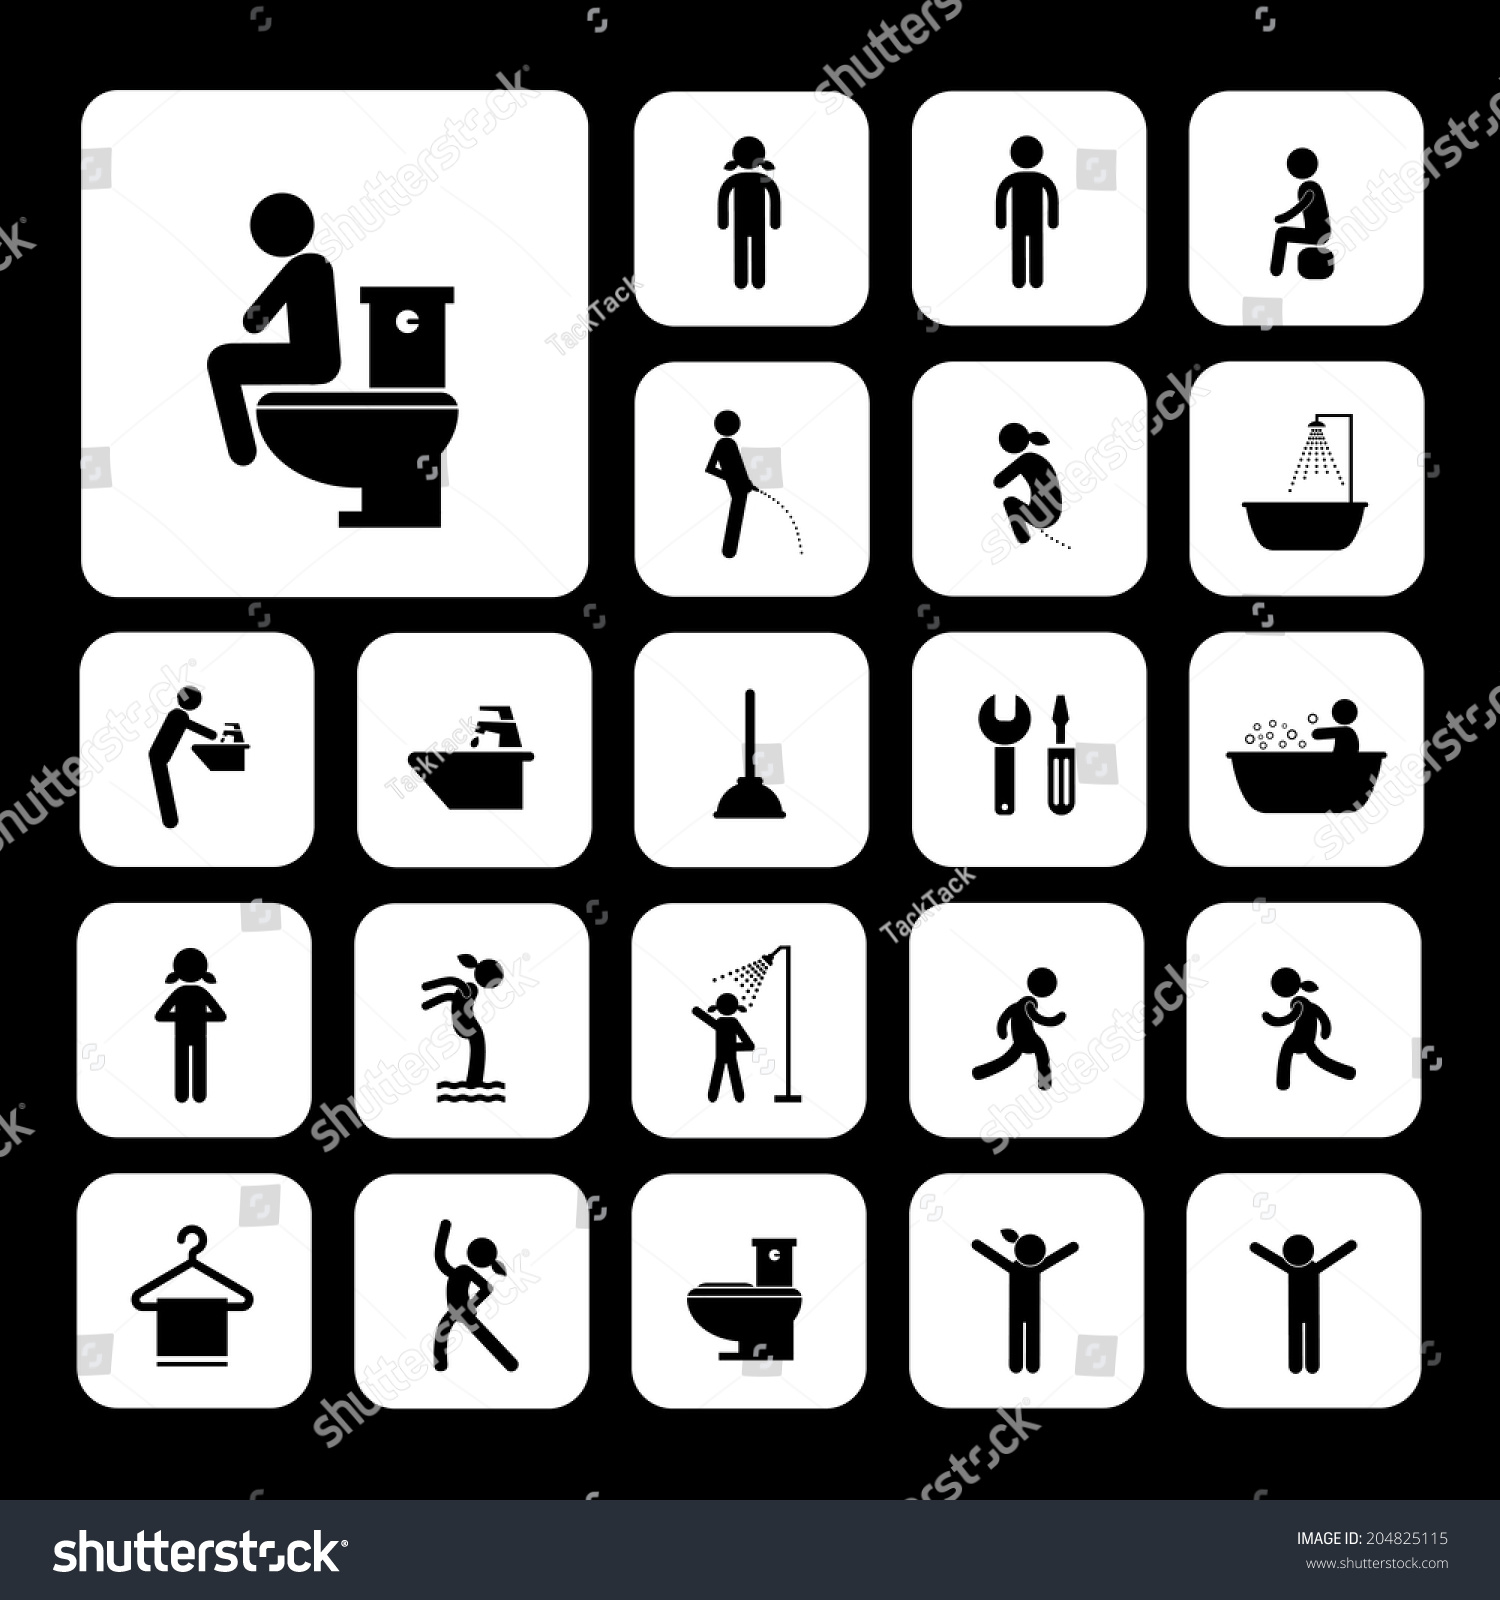 Toilet Hygiene Icons Set Stock Vector 204825115 - Shutterstock